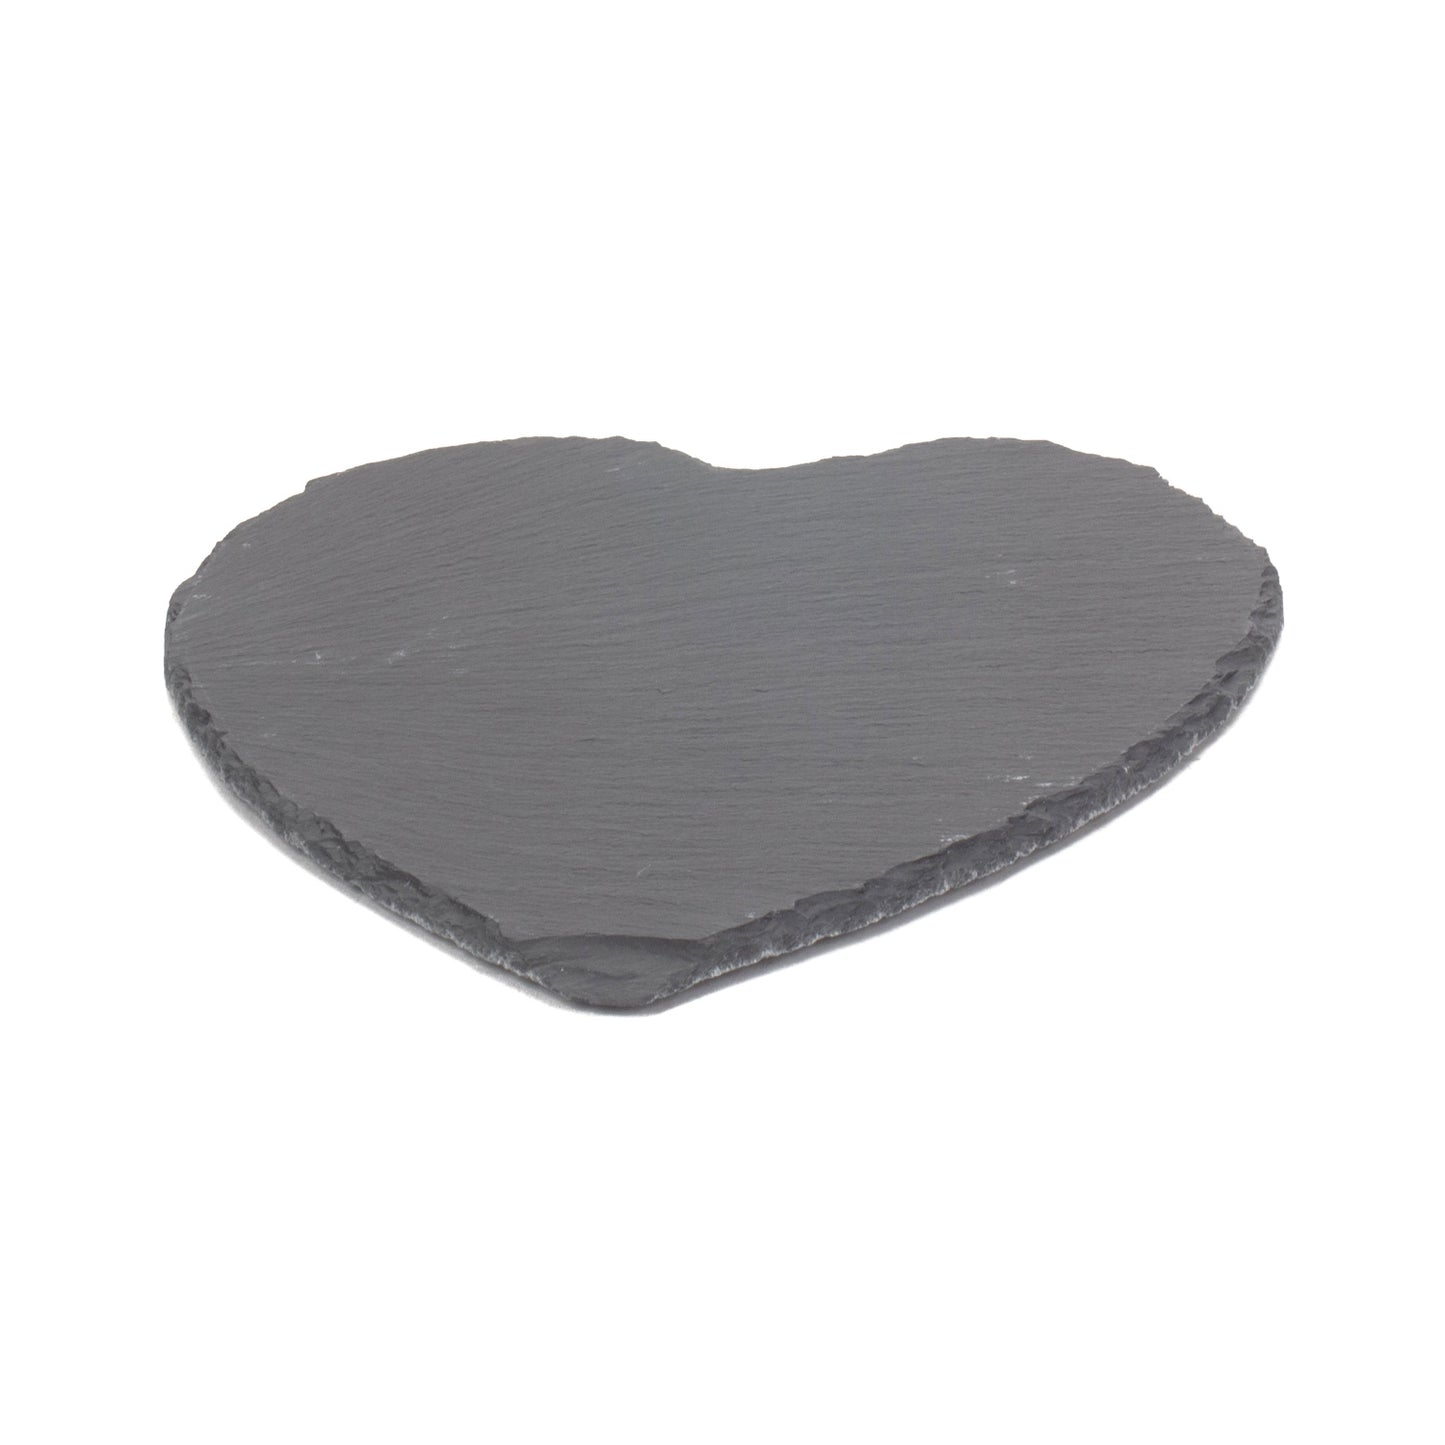 Heart-shaped Slate Cheese Board